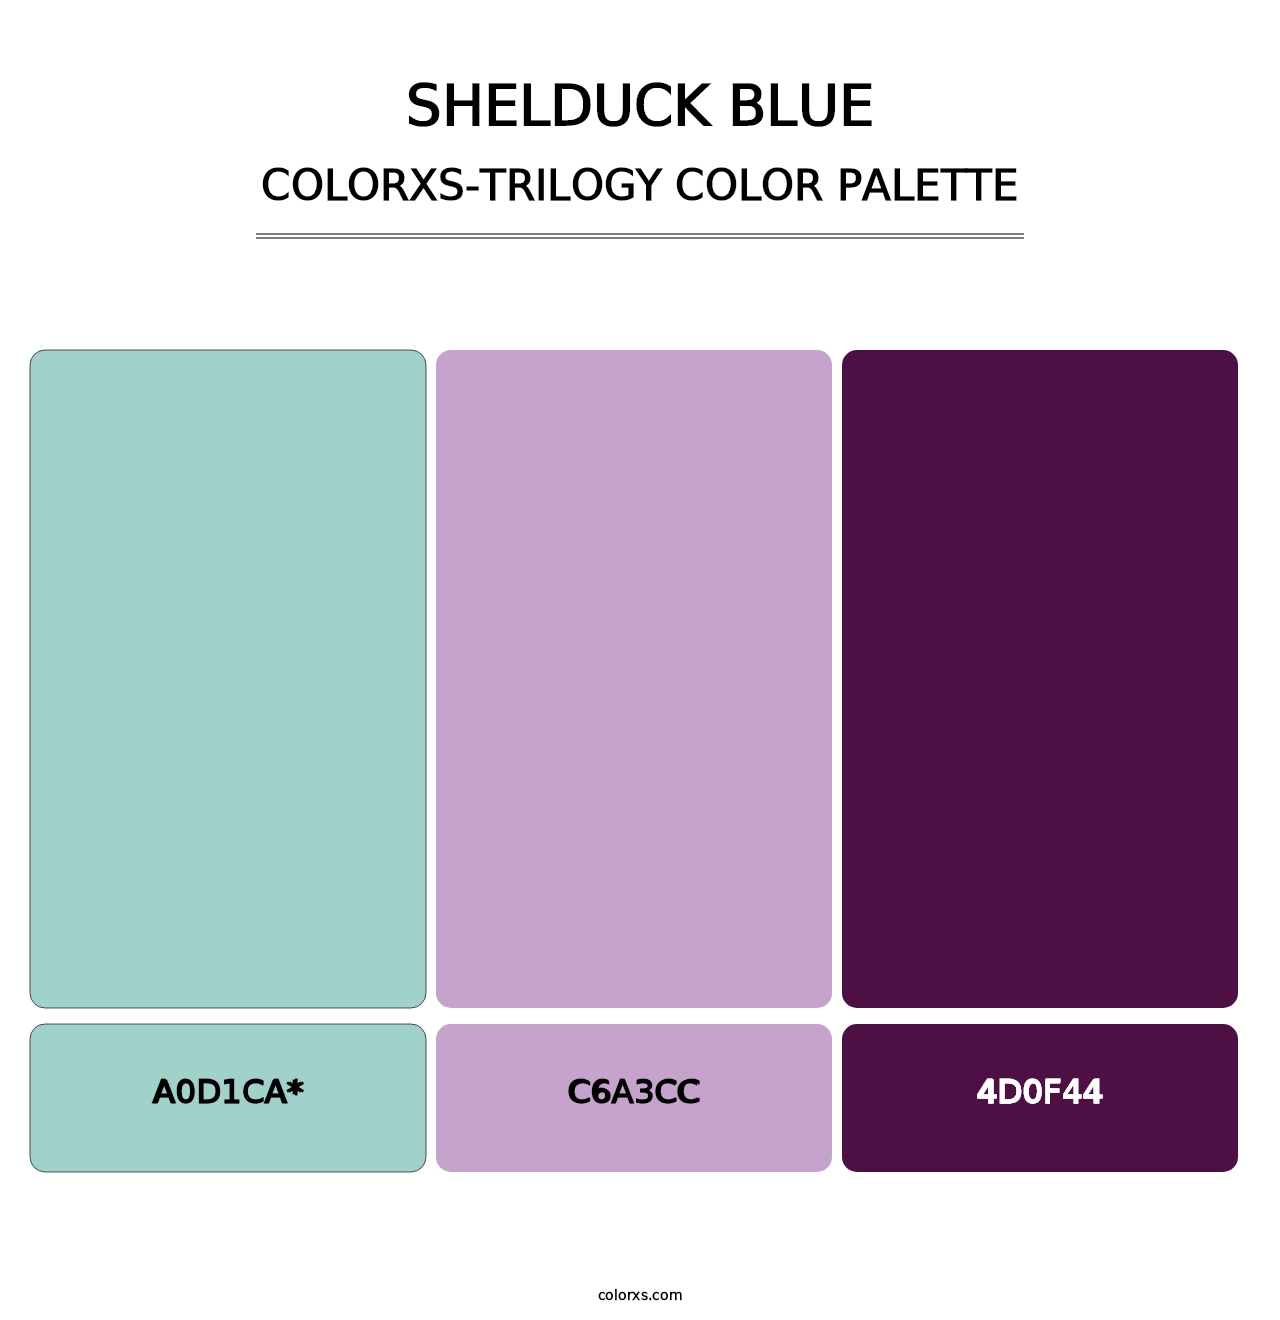 Shelduck Blue - Colorxs Trilogy Palette